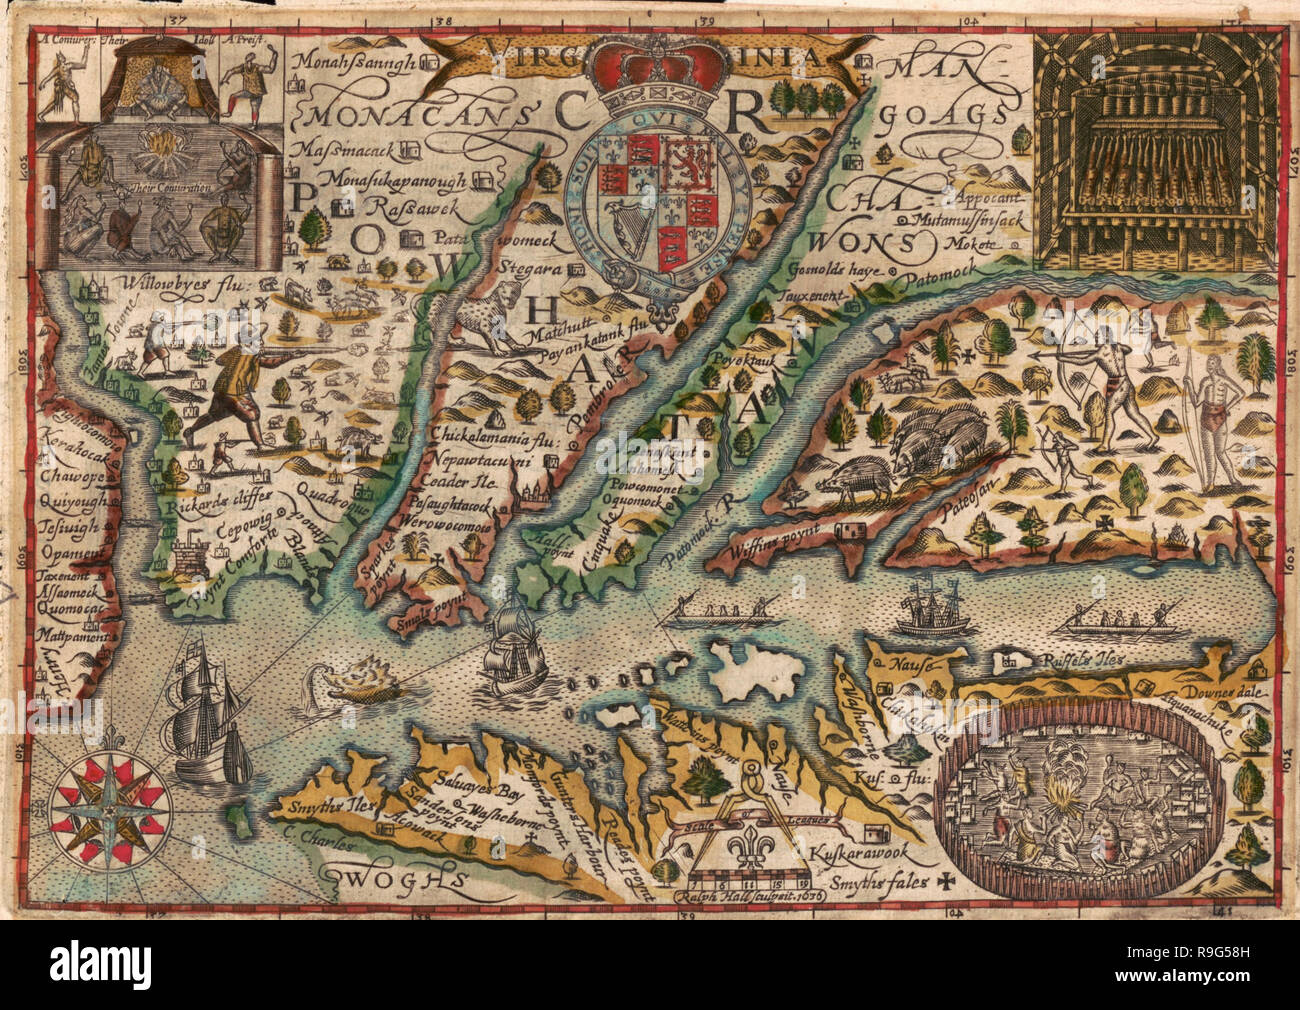 Karte von Virginia - Gedruckt für Michaell Sparke und sind in Greene sowld Arbowre, 1637 zu werden. Stockfoto